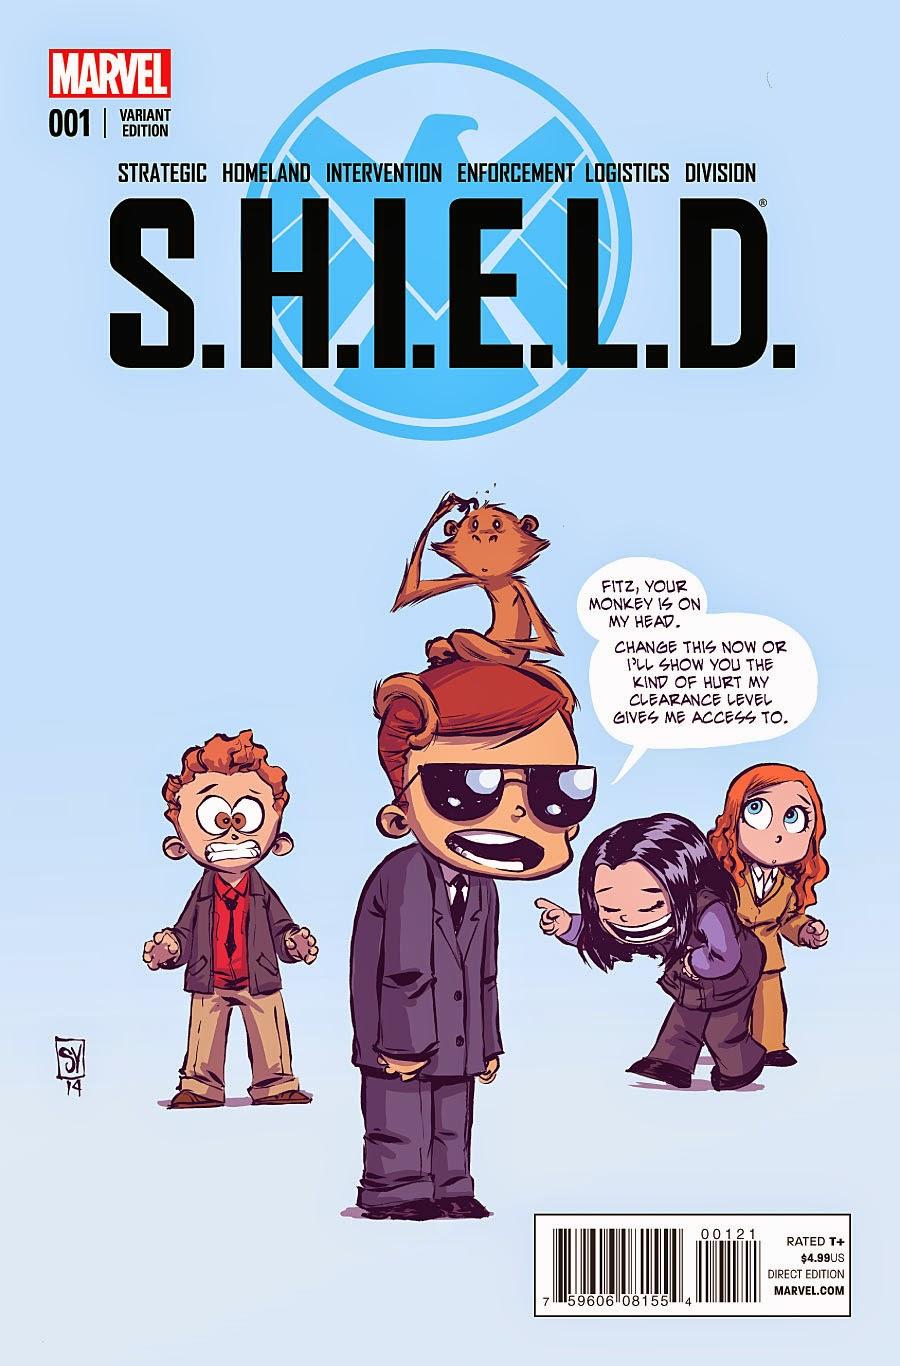 S.H.I.E.L.D #1 : DU PETIT ECRAN AUX COMIC-BOOKS